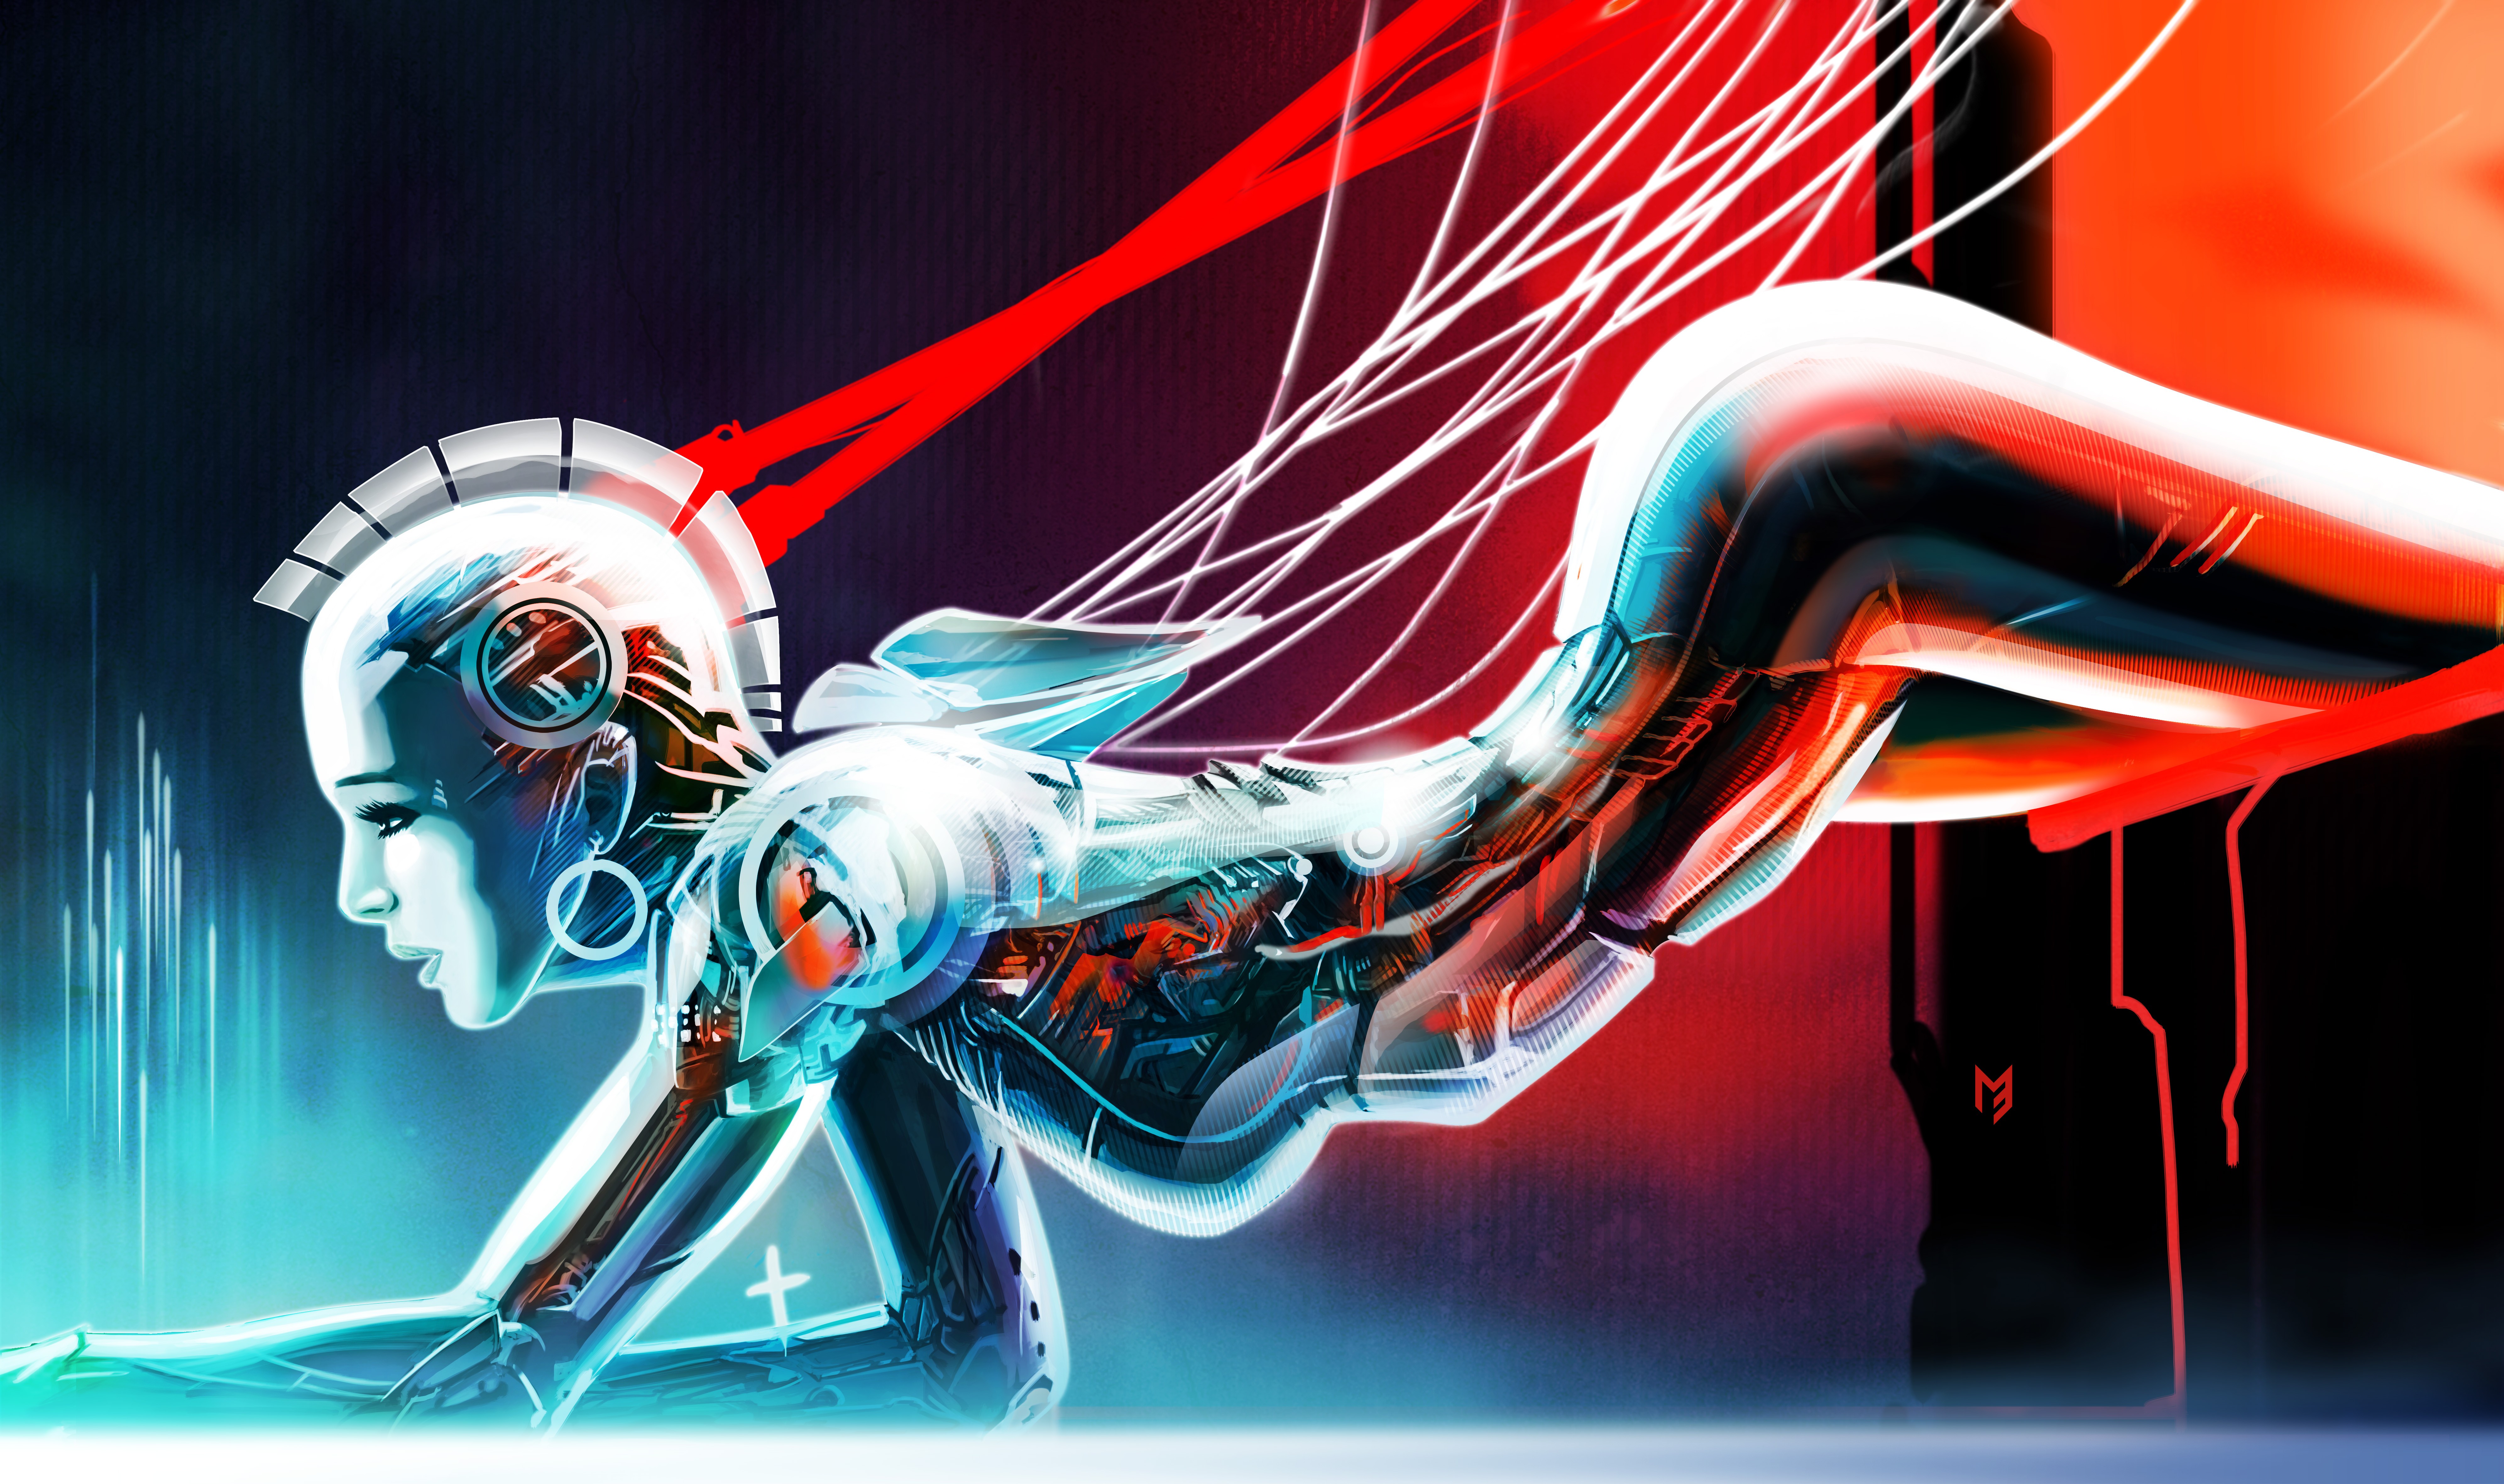 General 7969x4724 artwork concept art cyborg women digital art cyan red science fiction DeviantArt